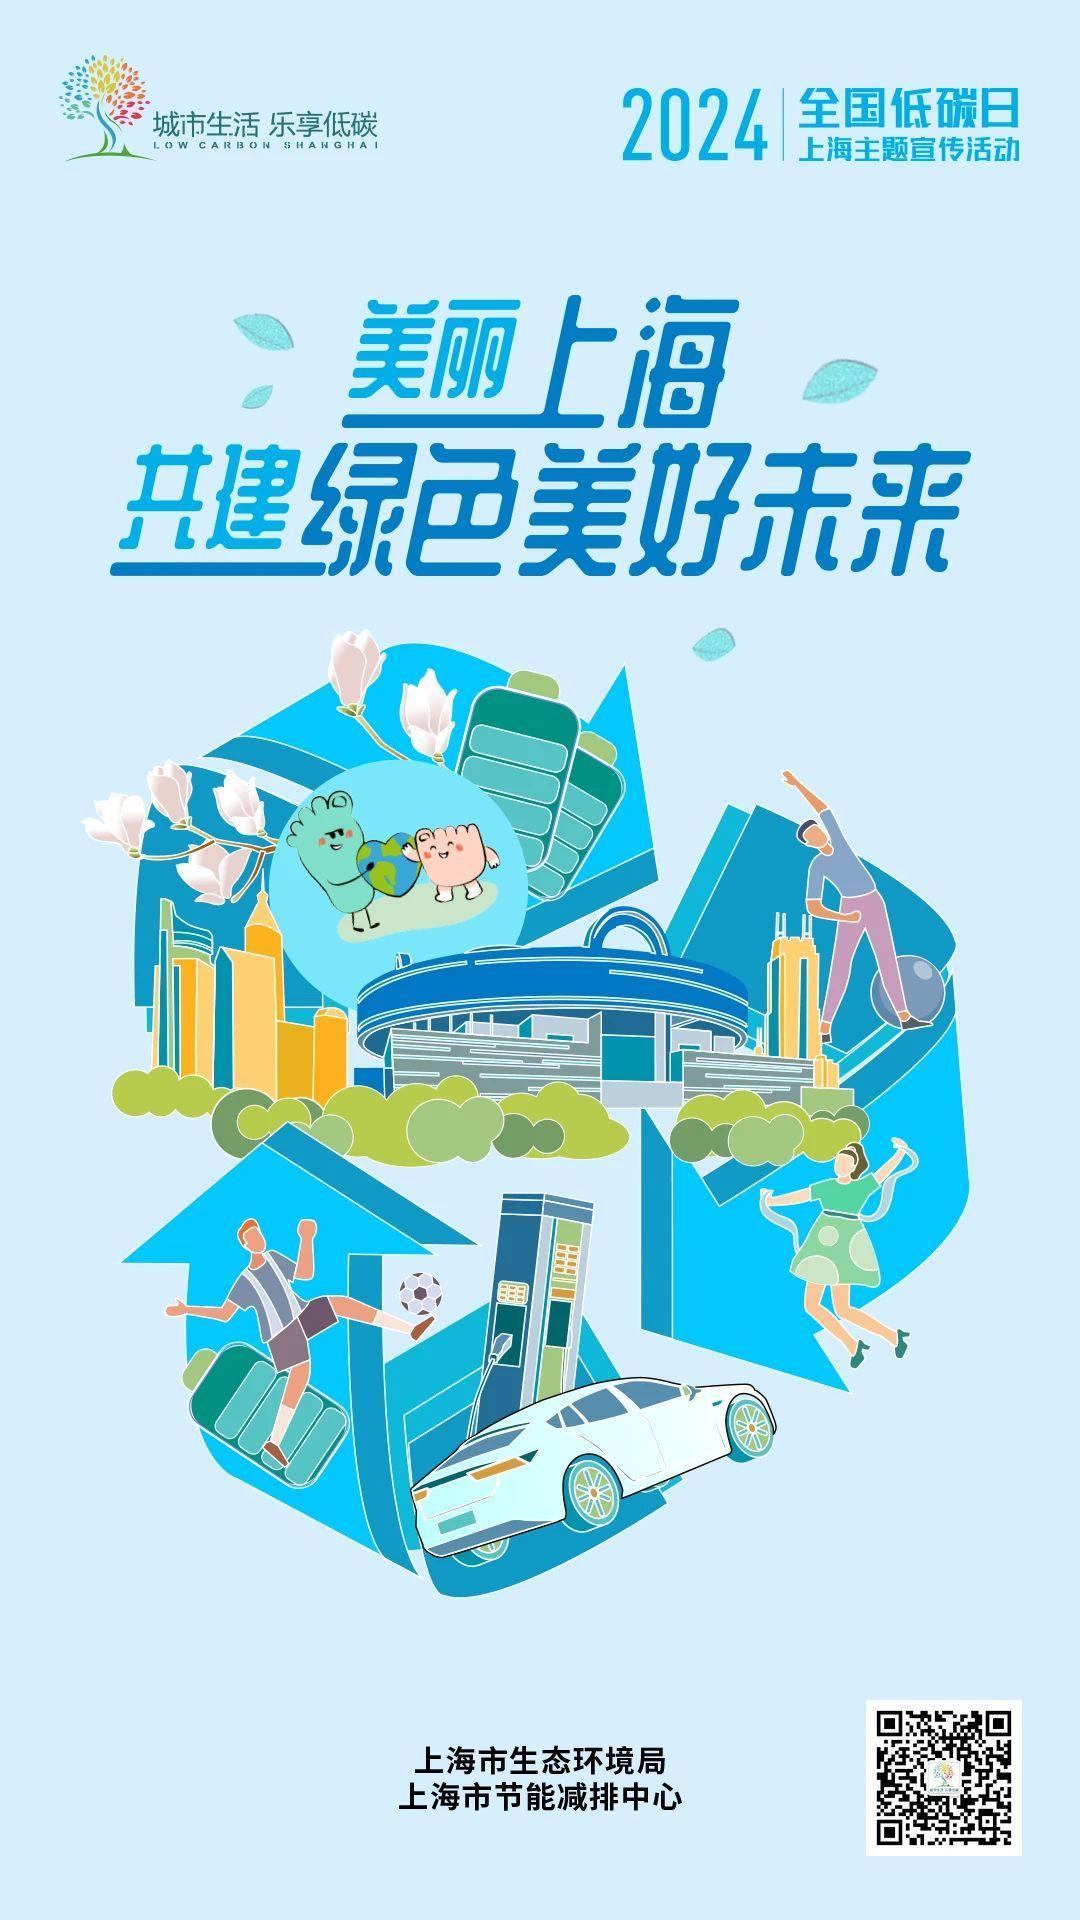 2024年全国低碳日上海主题宣传活动海报发布